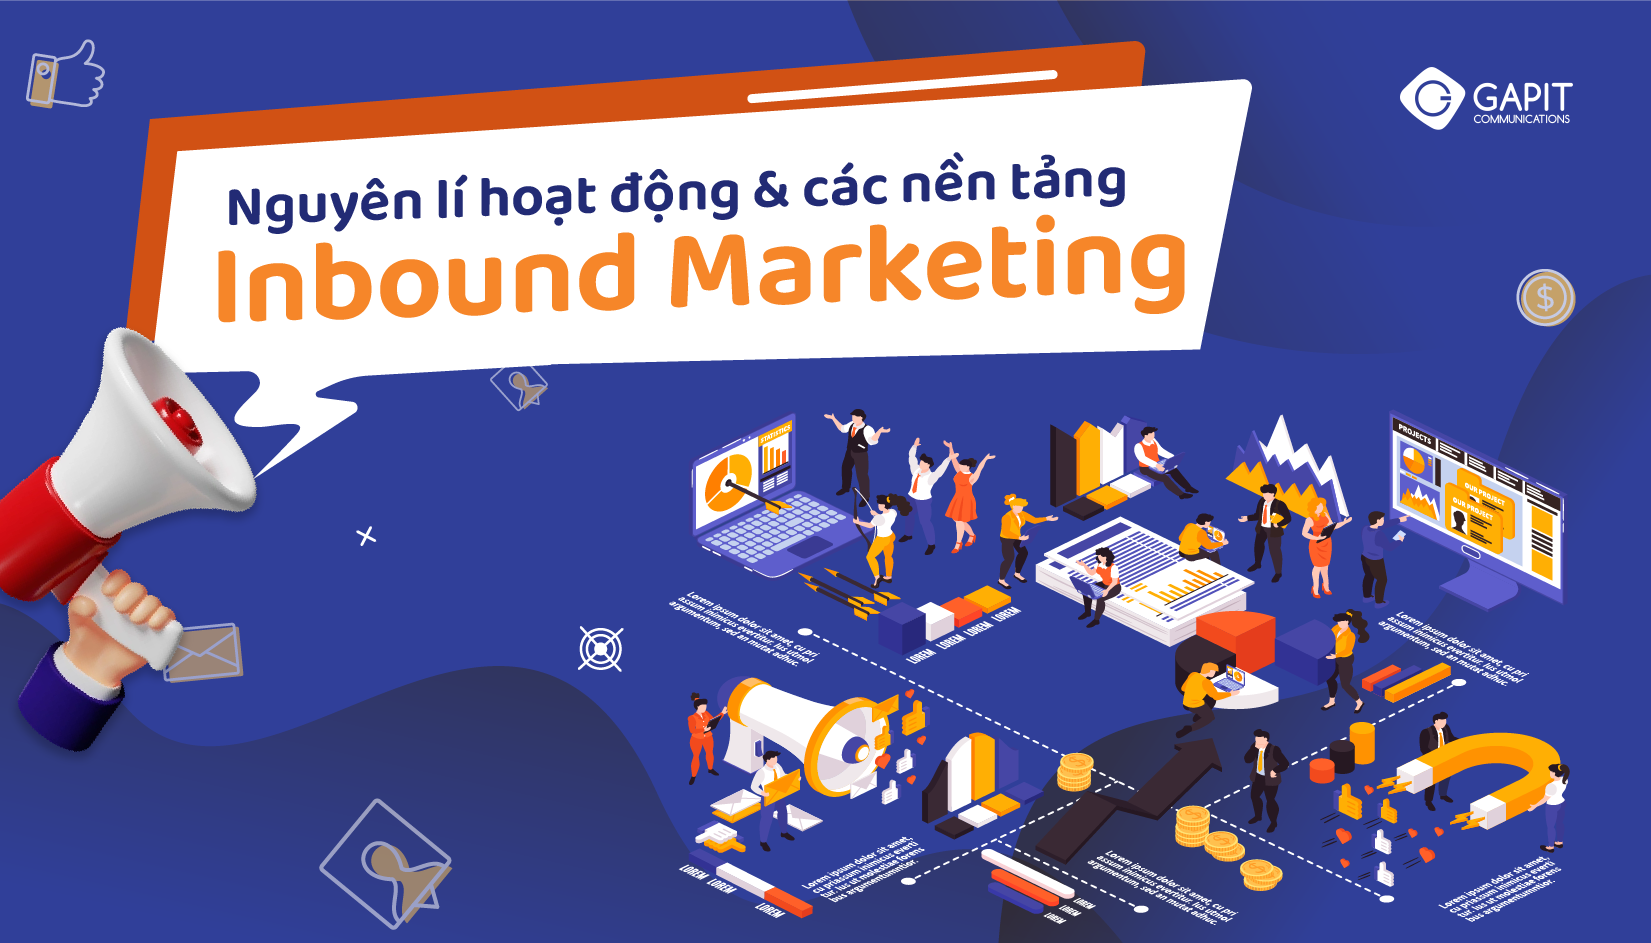 Nguyên lý hoạt động của Inbound Marketing và những nền tảng Inbound Marketing nổi bật tại Việt Nam